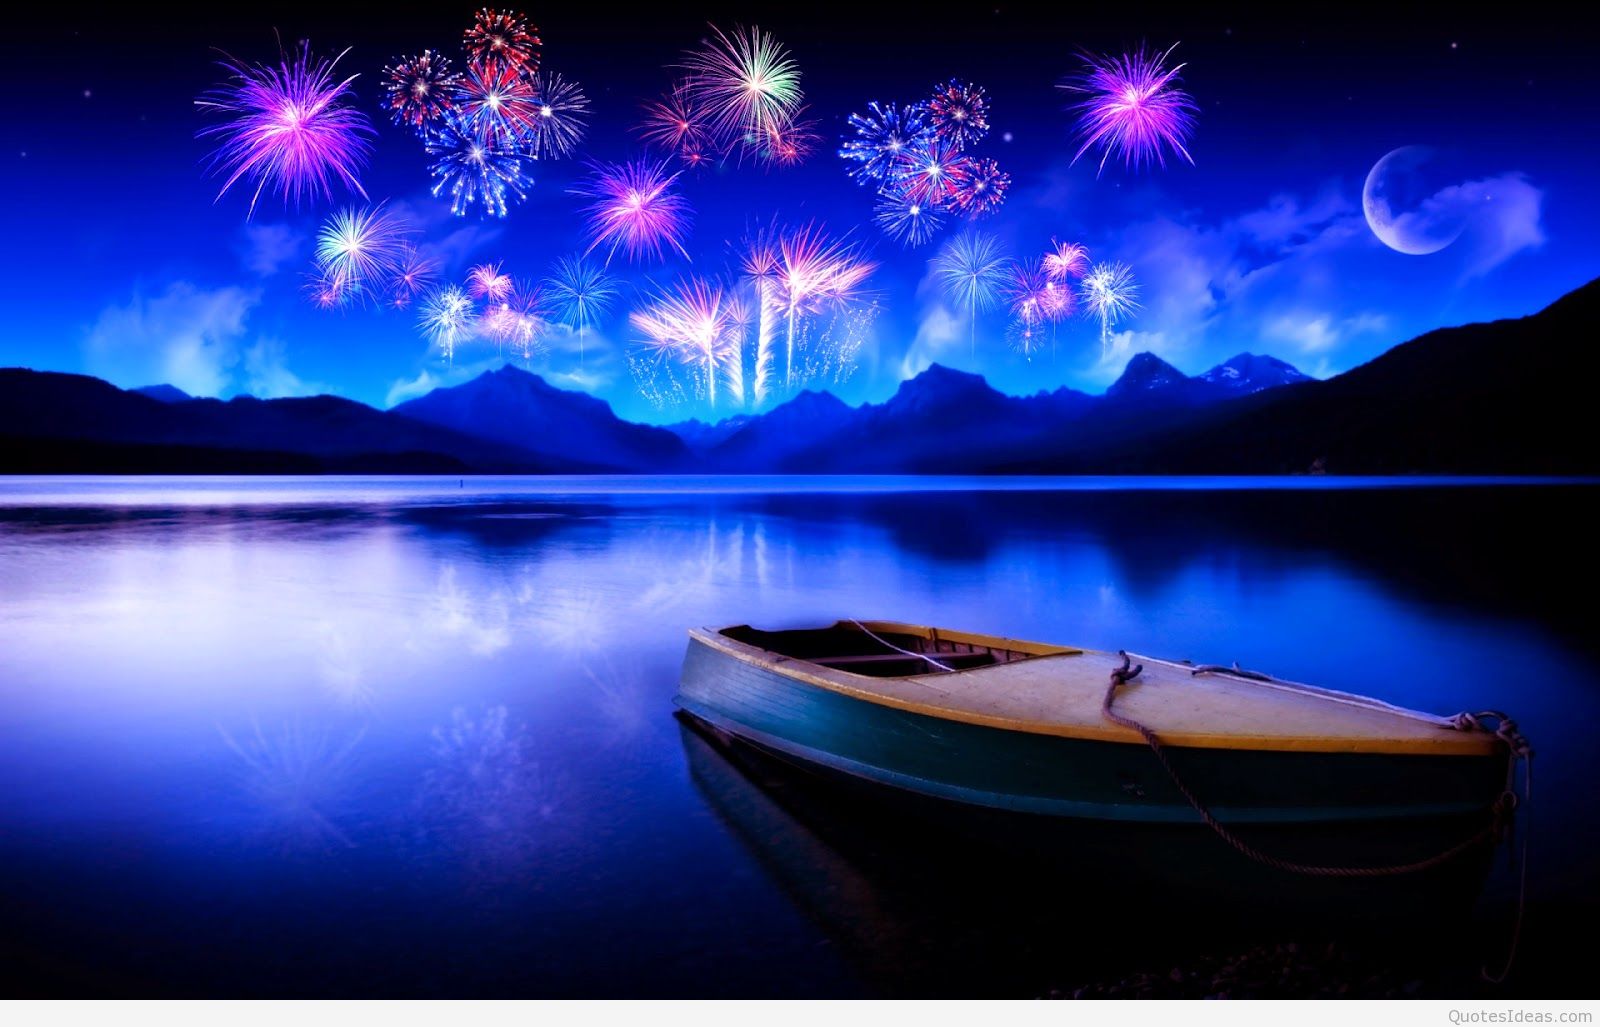 Happy New Year 2016 Best Fireworks HD Wallpaper For Desktop 1600x1027